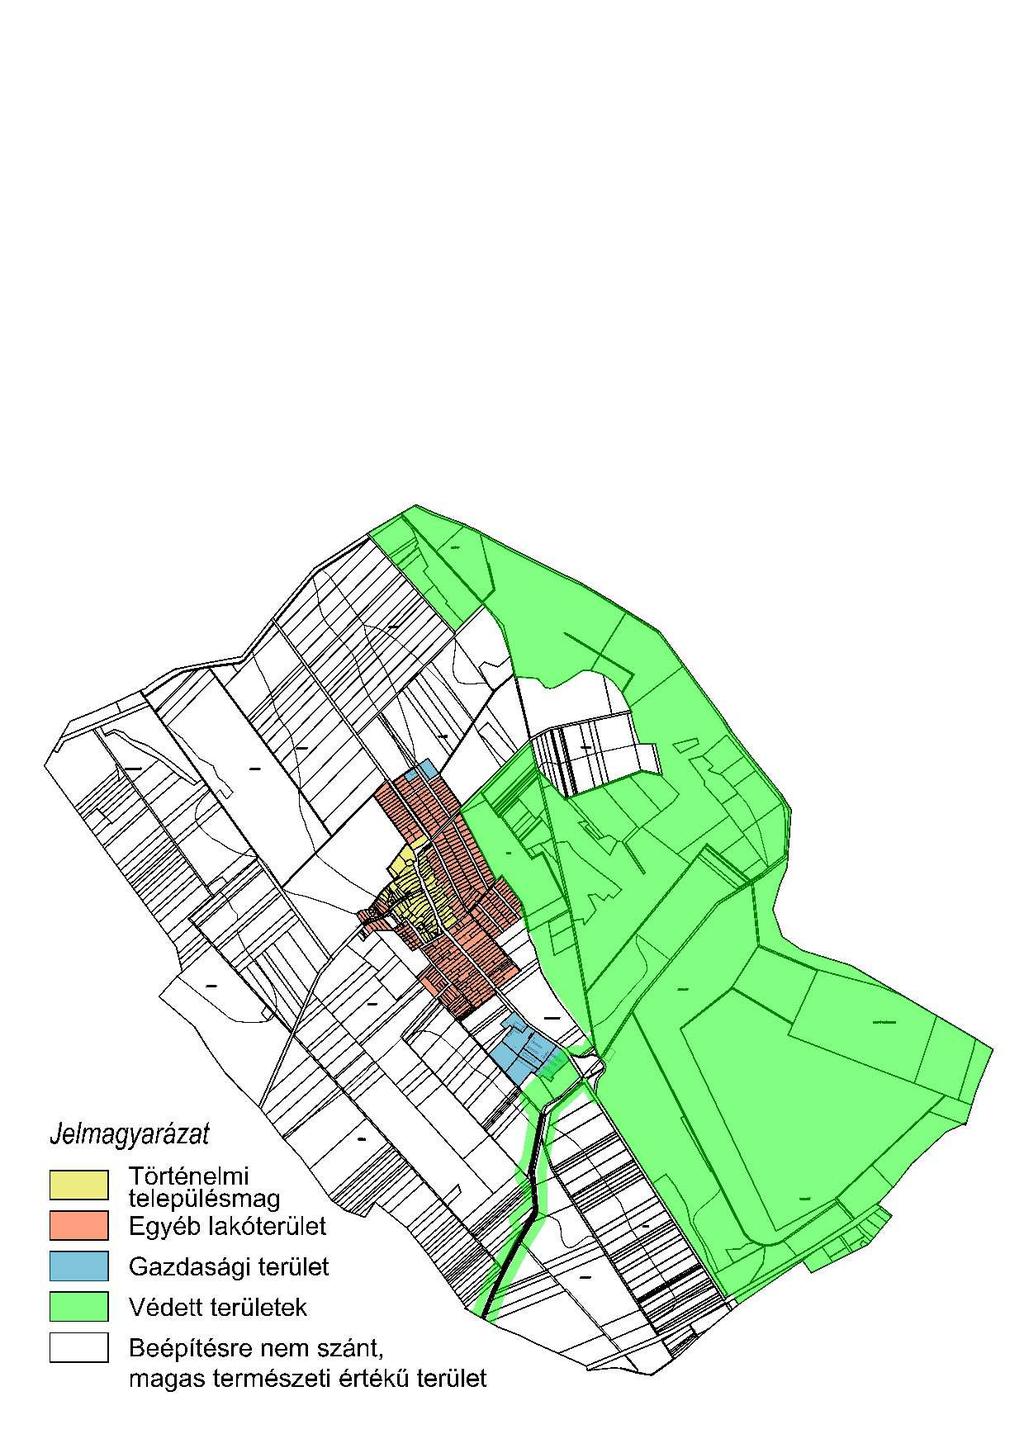 Településképi szempontból meghatározó területek lehatárolása 9. Történelmi településmag településrészre vonatkozó településképi követelmények 13.